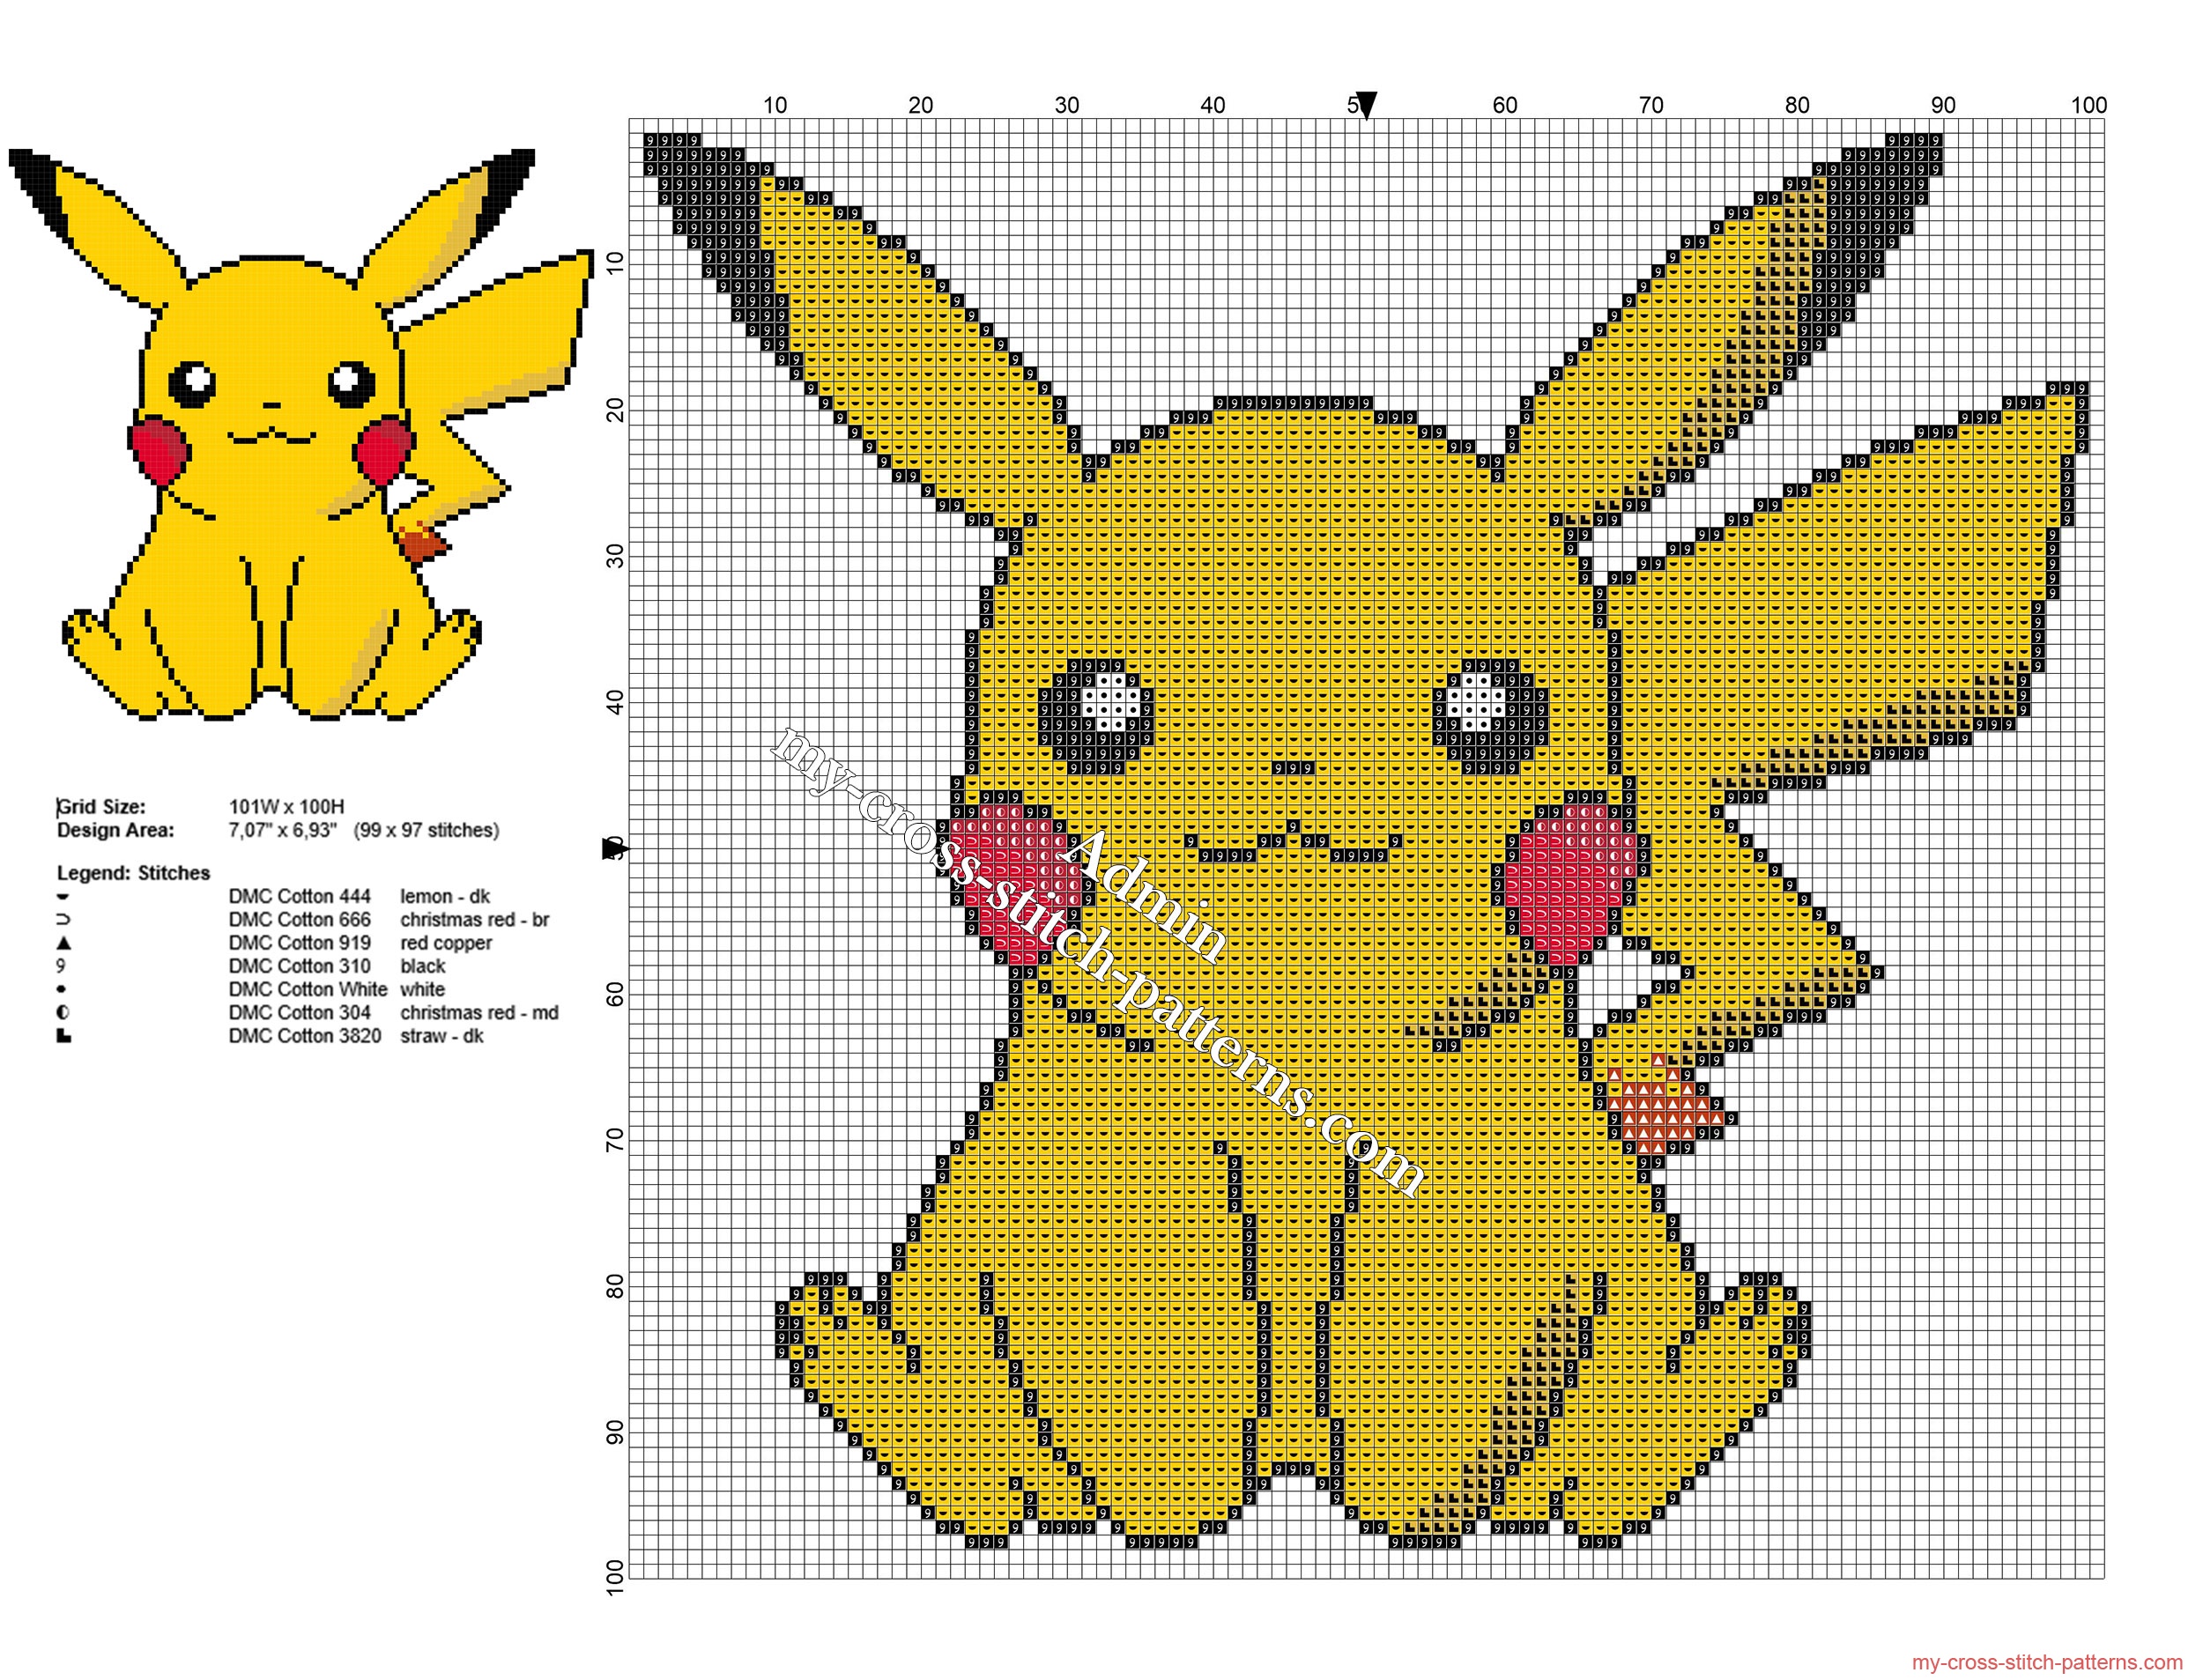 Pikachu Pokémon free small and simple cross stitch pattern - free cross